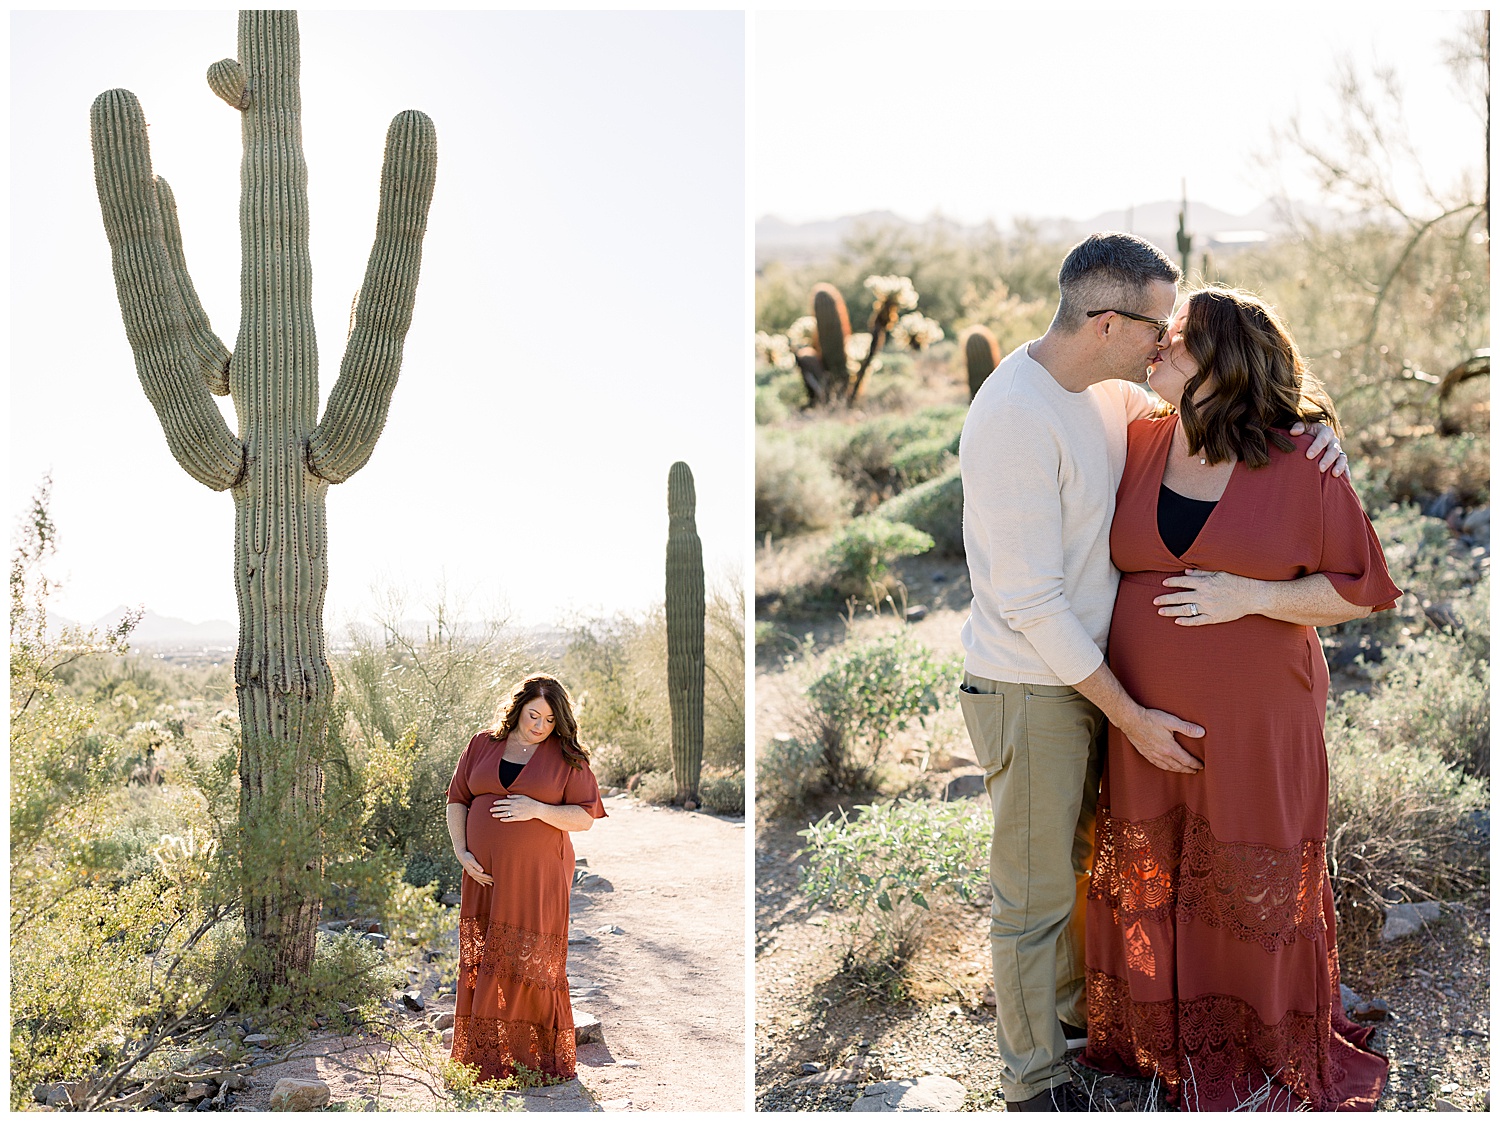 Scottsdale Arizona Maternity Photos with Saguaros, Desert Maternity Photos, Arizona Maternity photographer